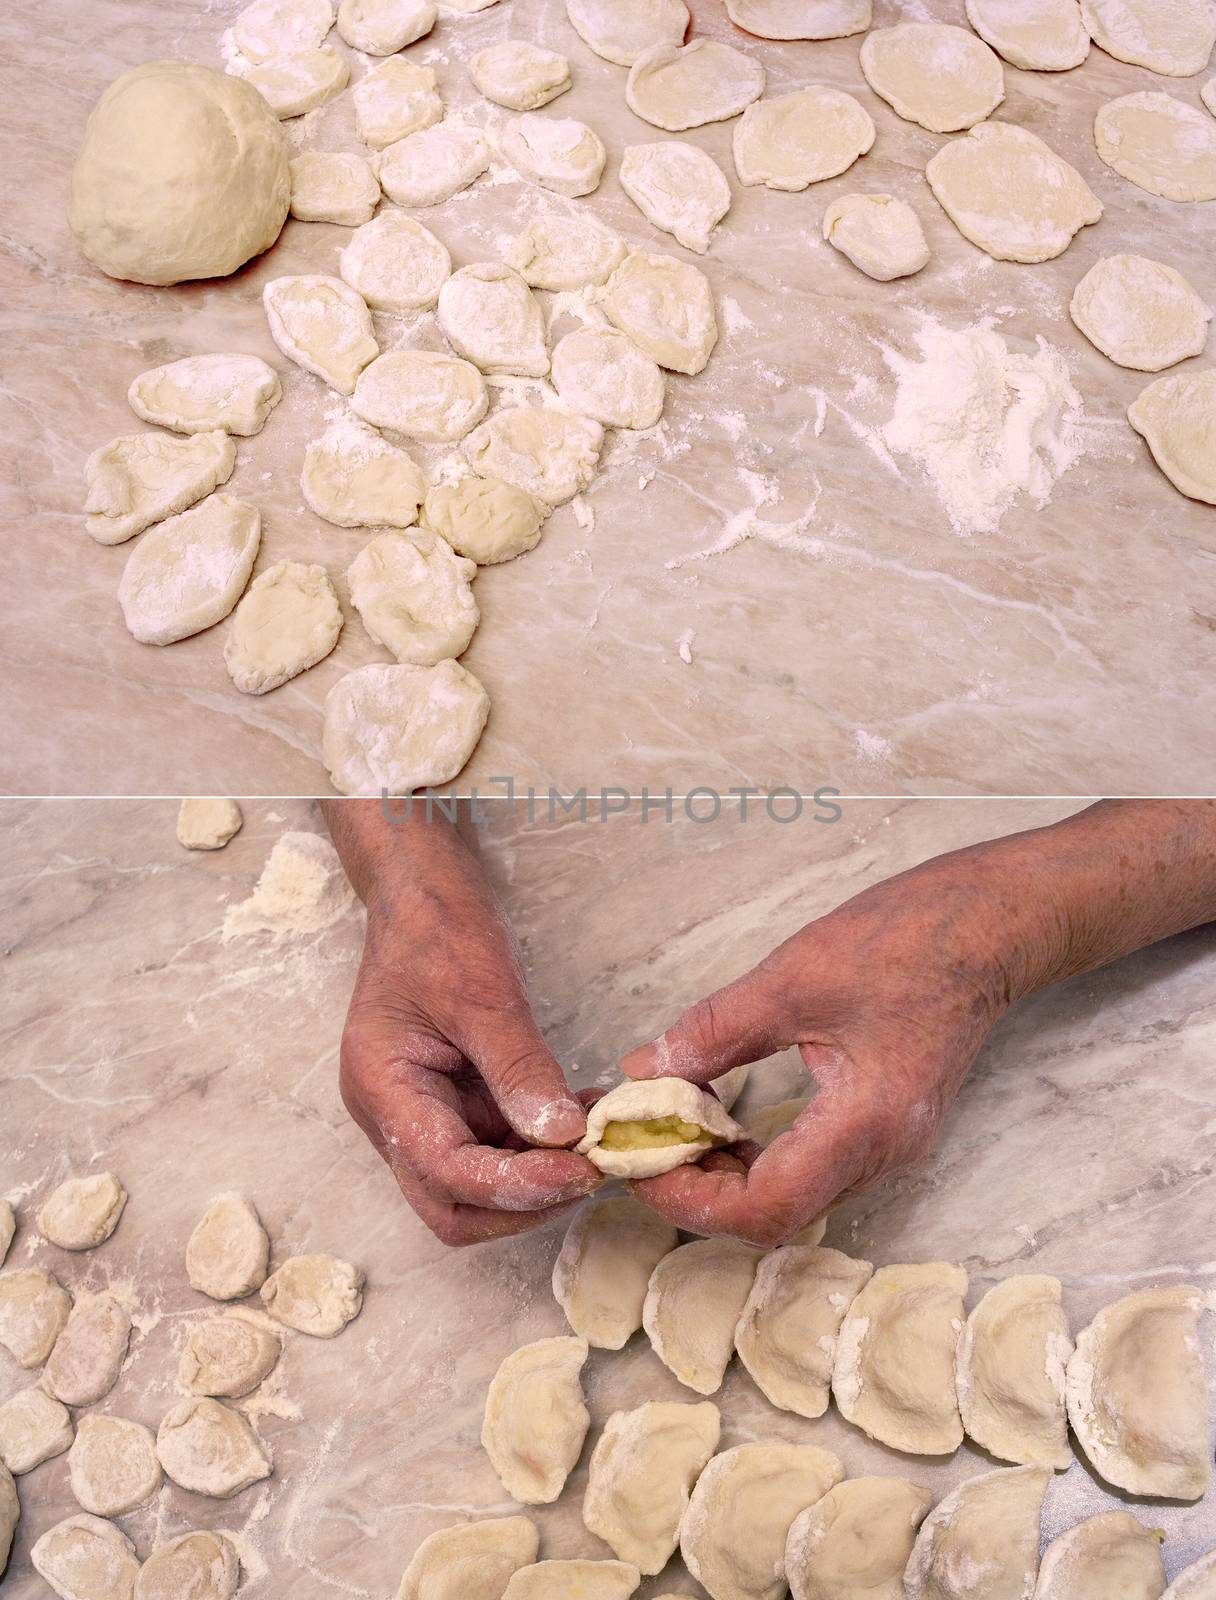 Grandma's dumplings by Krakatuk